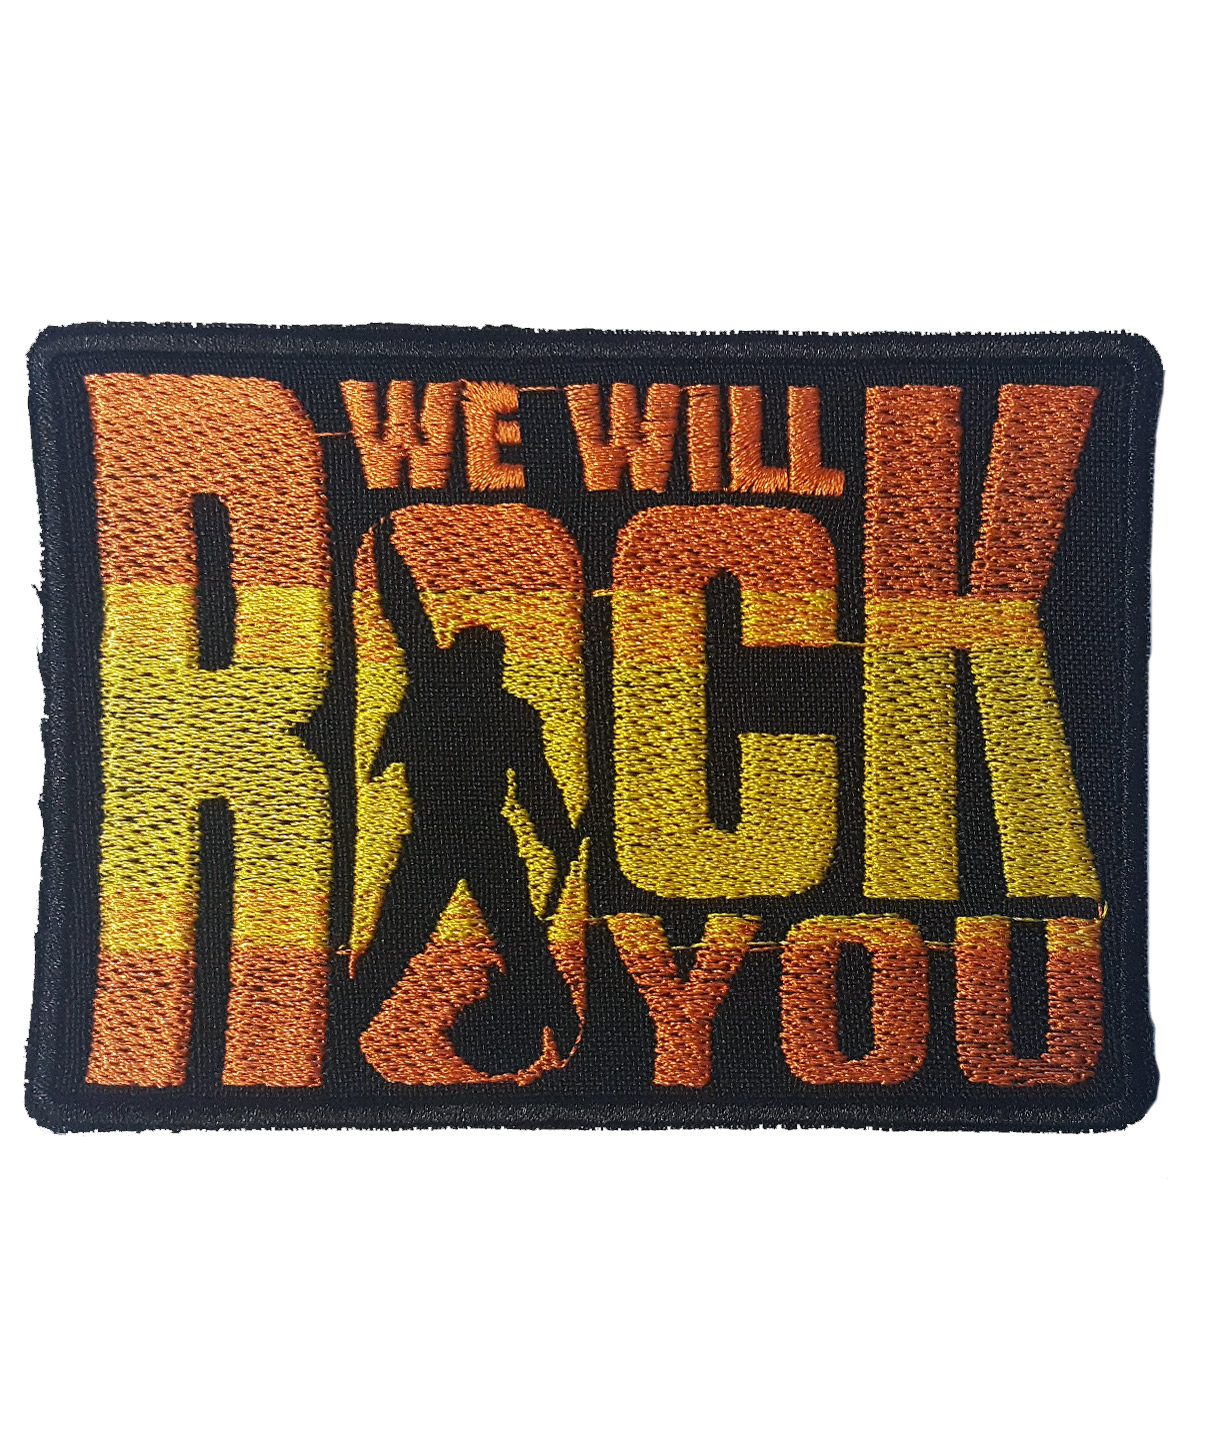 Нашивка We will Rock You - фото 1 - rockbunker.ru